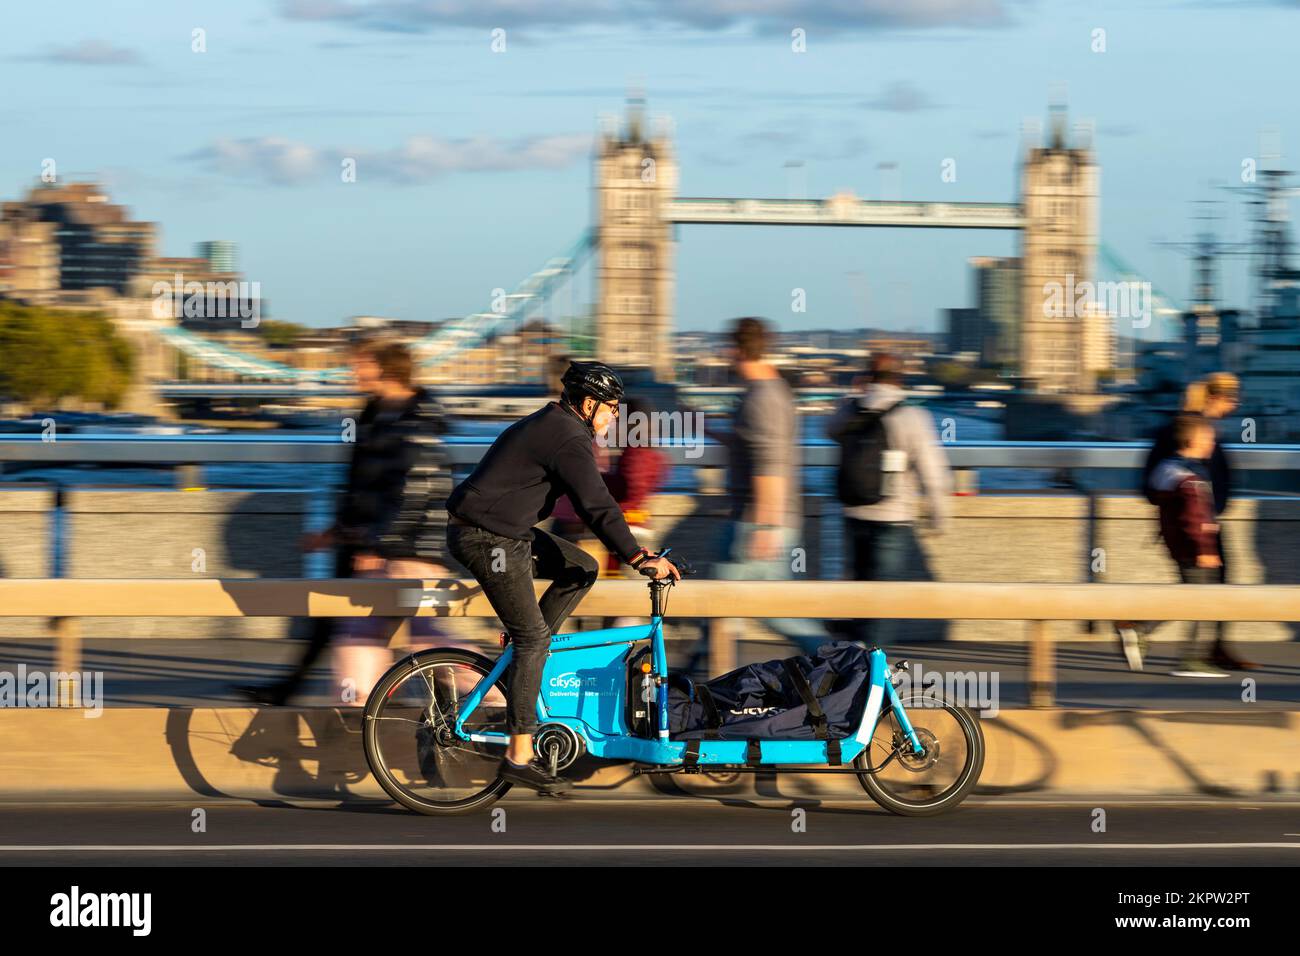 Un coursier Citysprint à vélo qui traverse un vélo de transport électronique Bullitt, London Bridge, Londres, Royaume-Uni. 28 octobre 2022 Banque D'Images